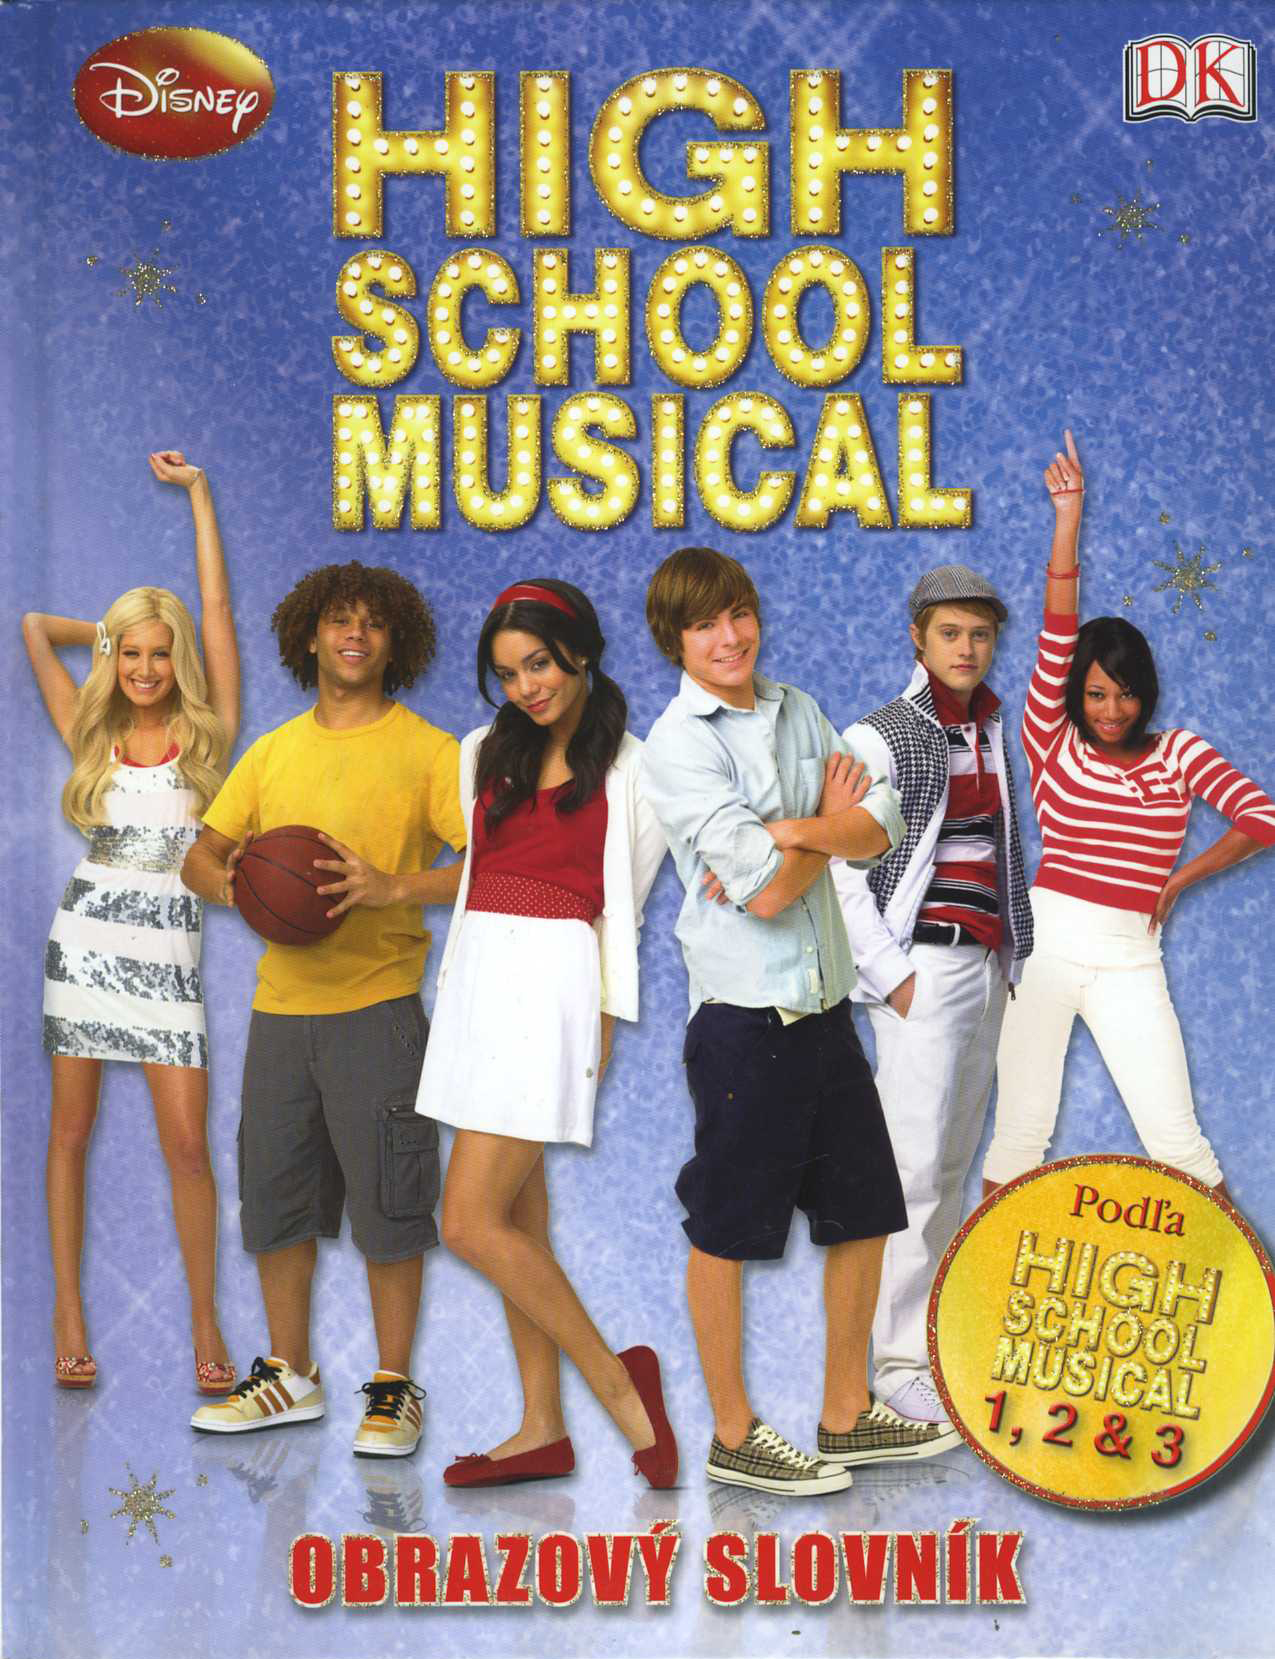 High School Musical - obrazový slovník 